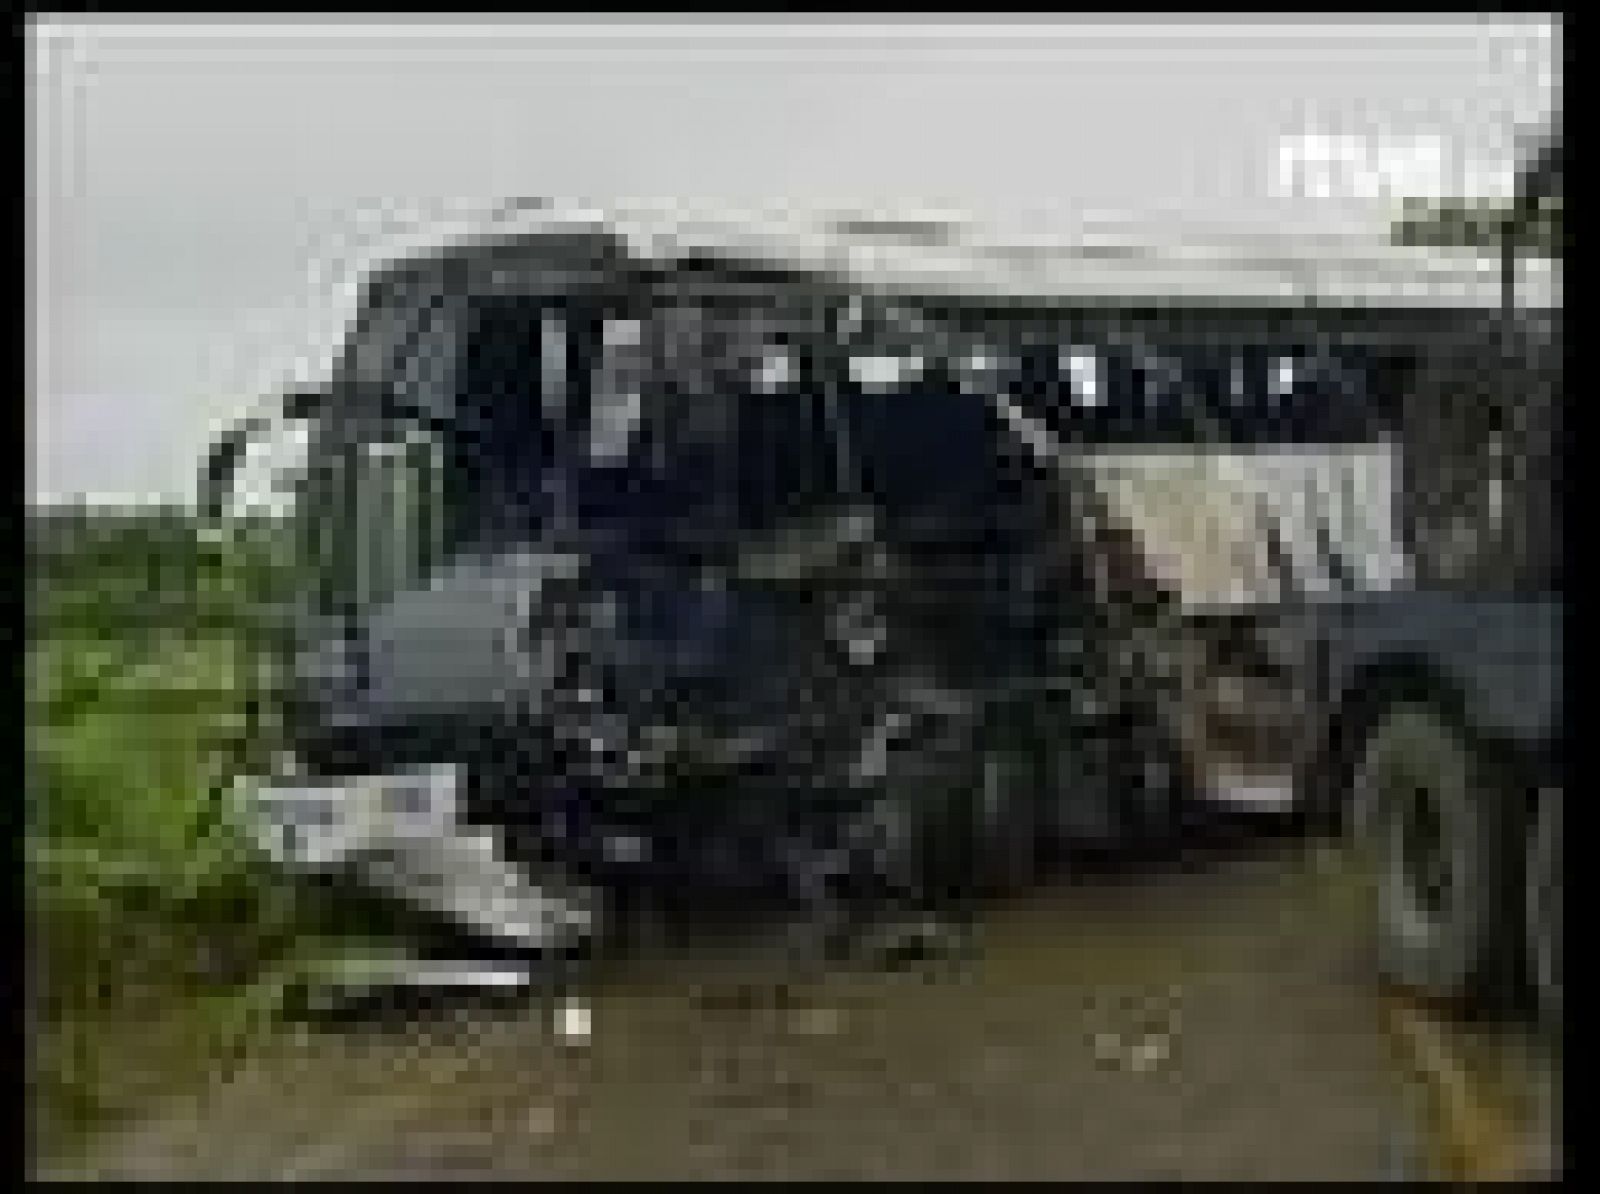 Un grave accidente de autobús en la República Dominicana ha dejado 19 muertos y 24 heridos. Entre los fallecidos se hallan seis turistas italianos.